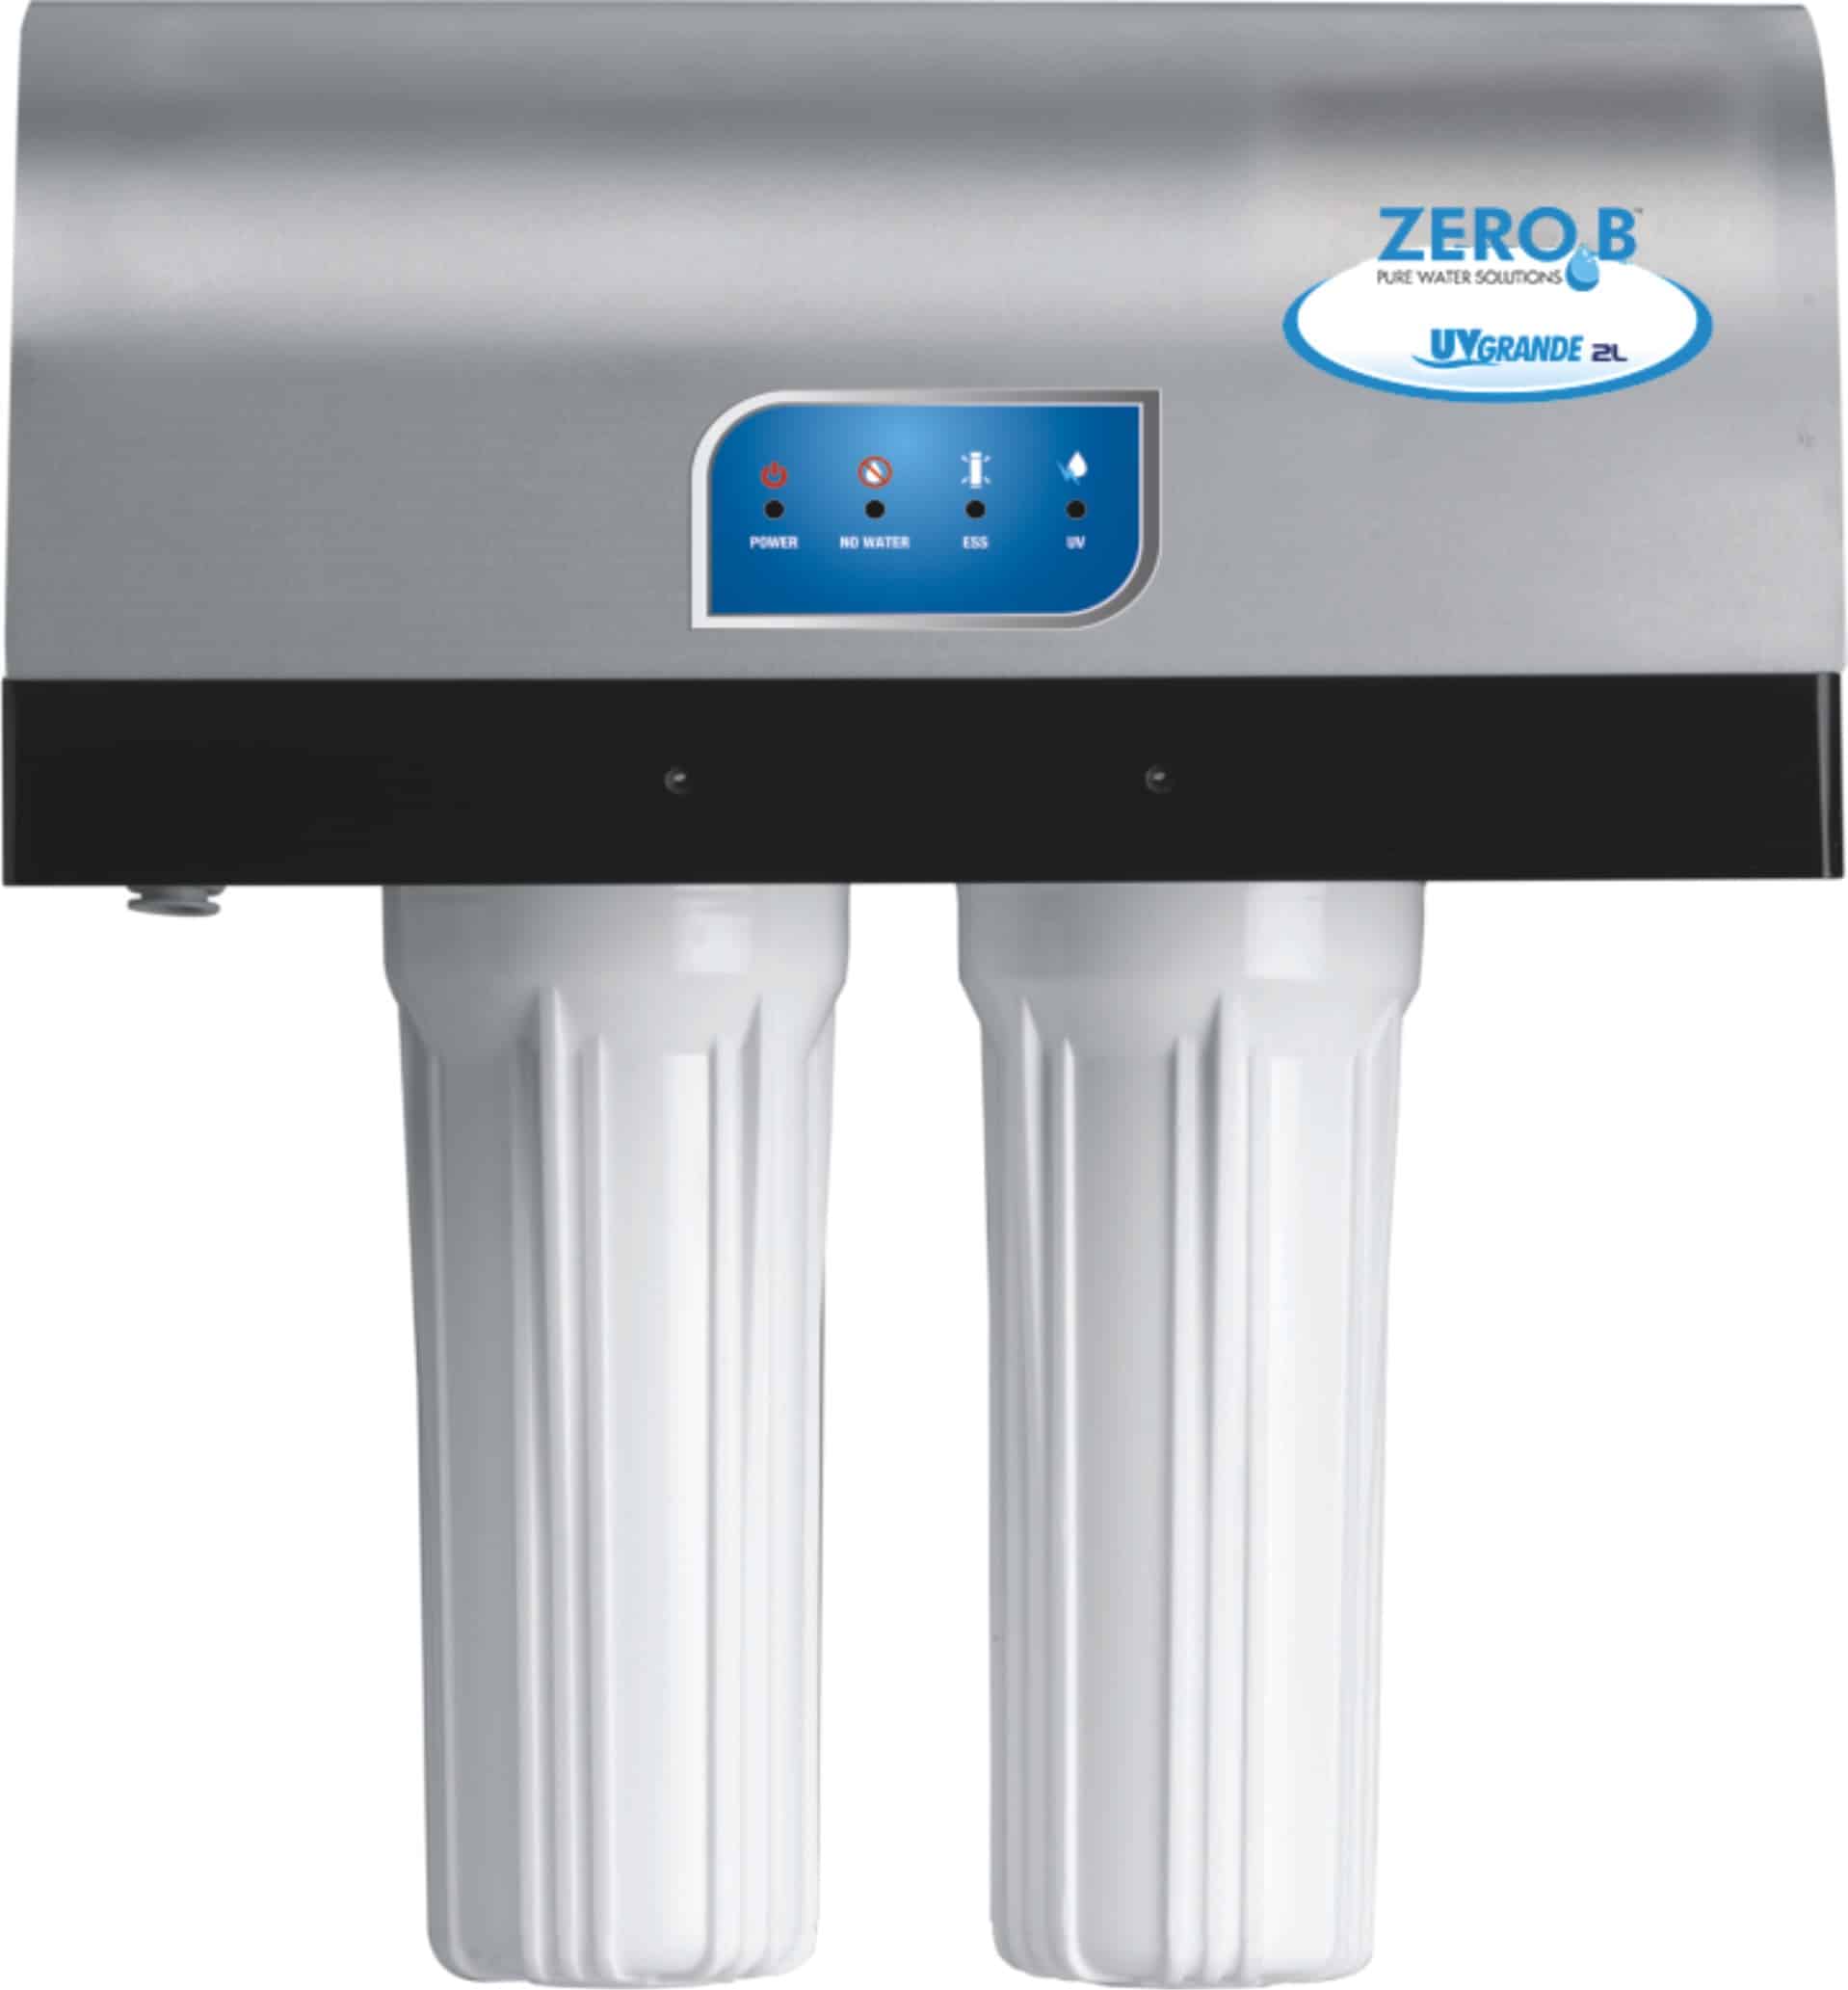 ZeroB UV Grande 4L (UV + Active Silver Technology)